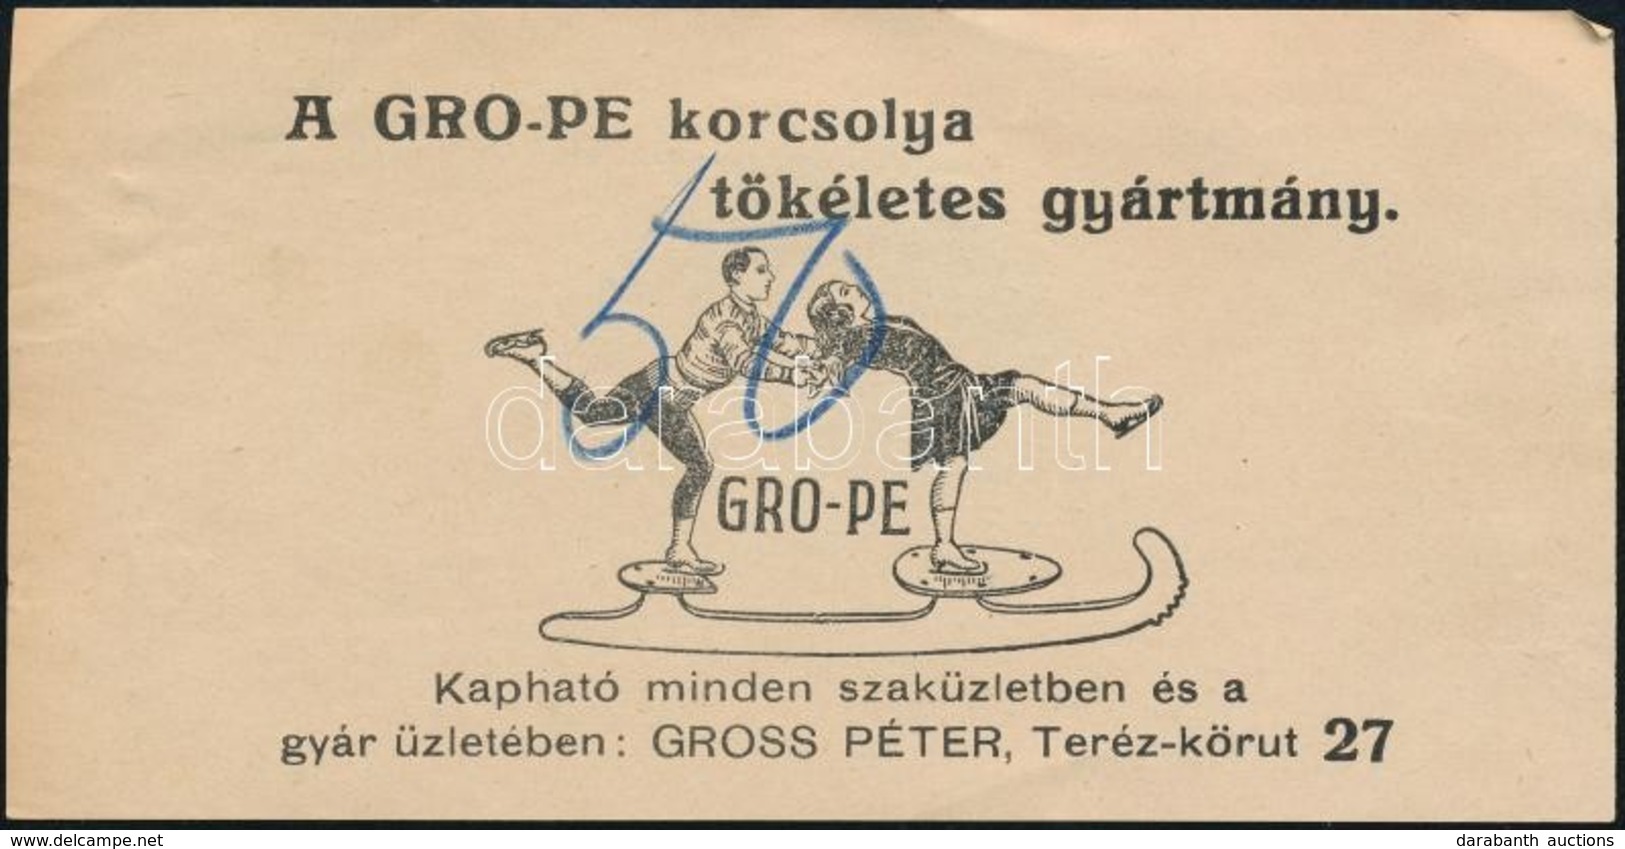 Gro-Pe Korcsolya, Gross Péter Budapesti üzletében - Számolócédula - Werbung